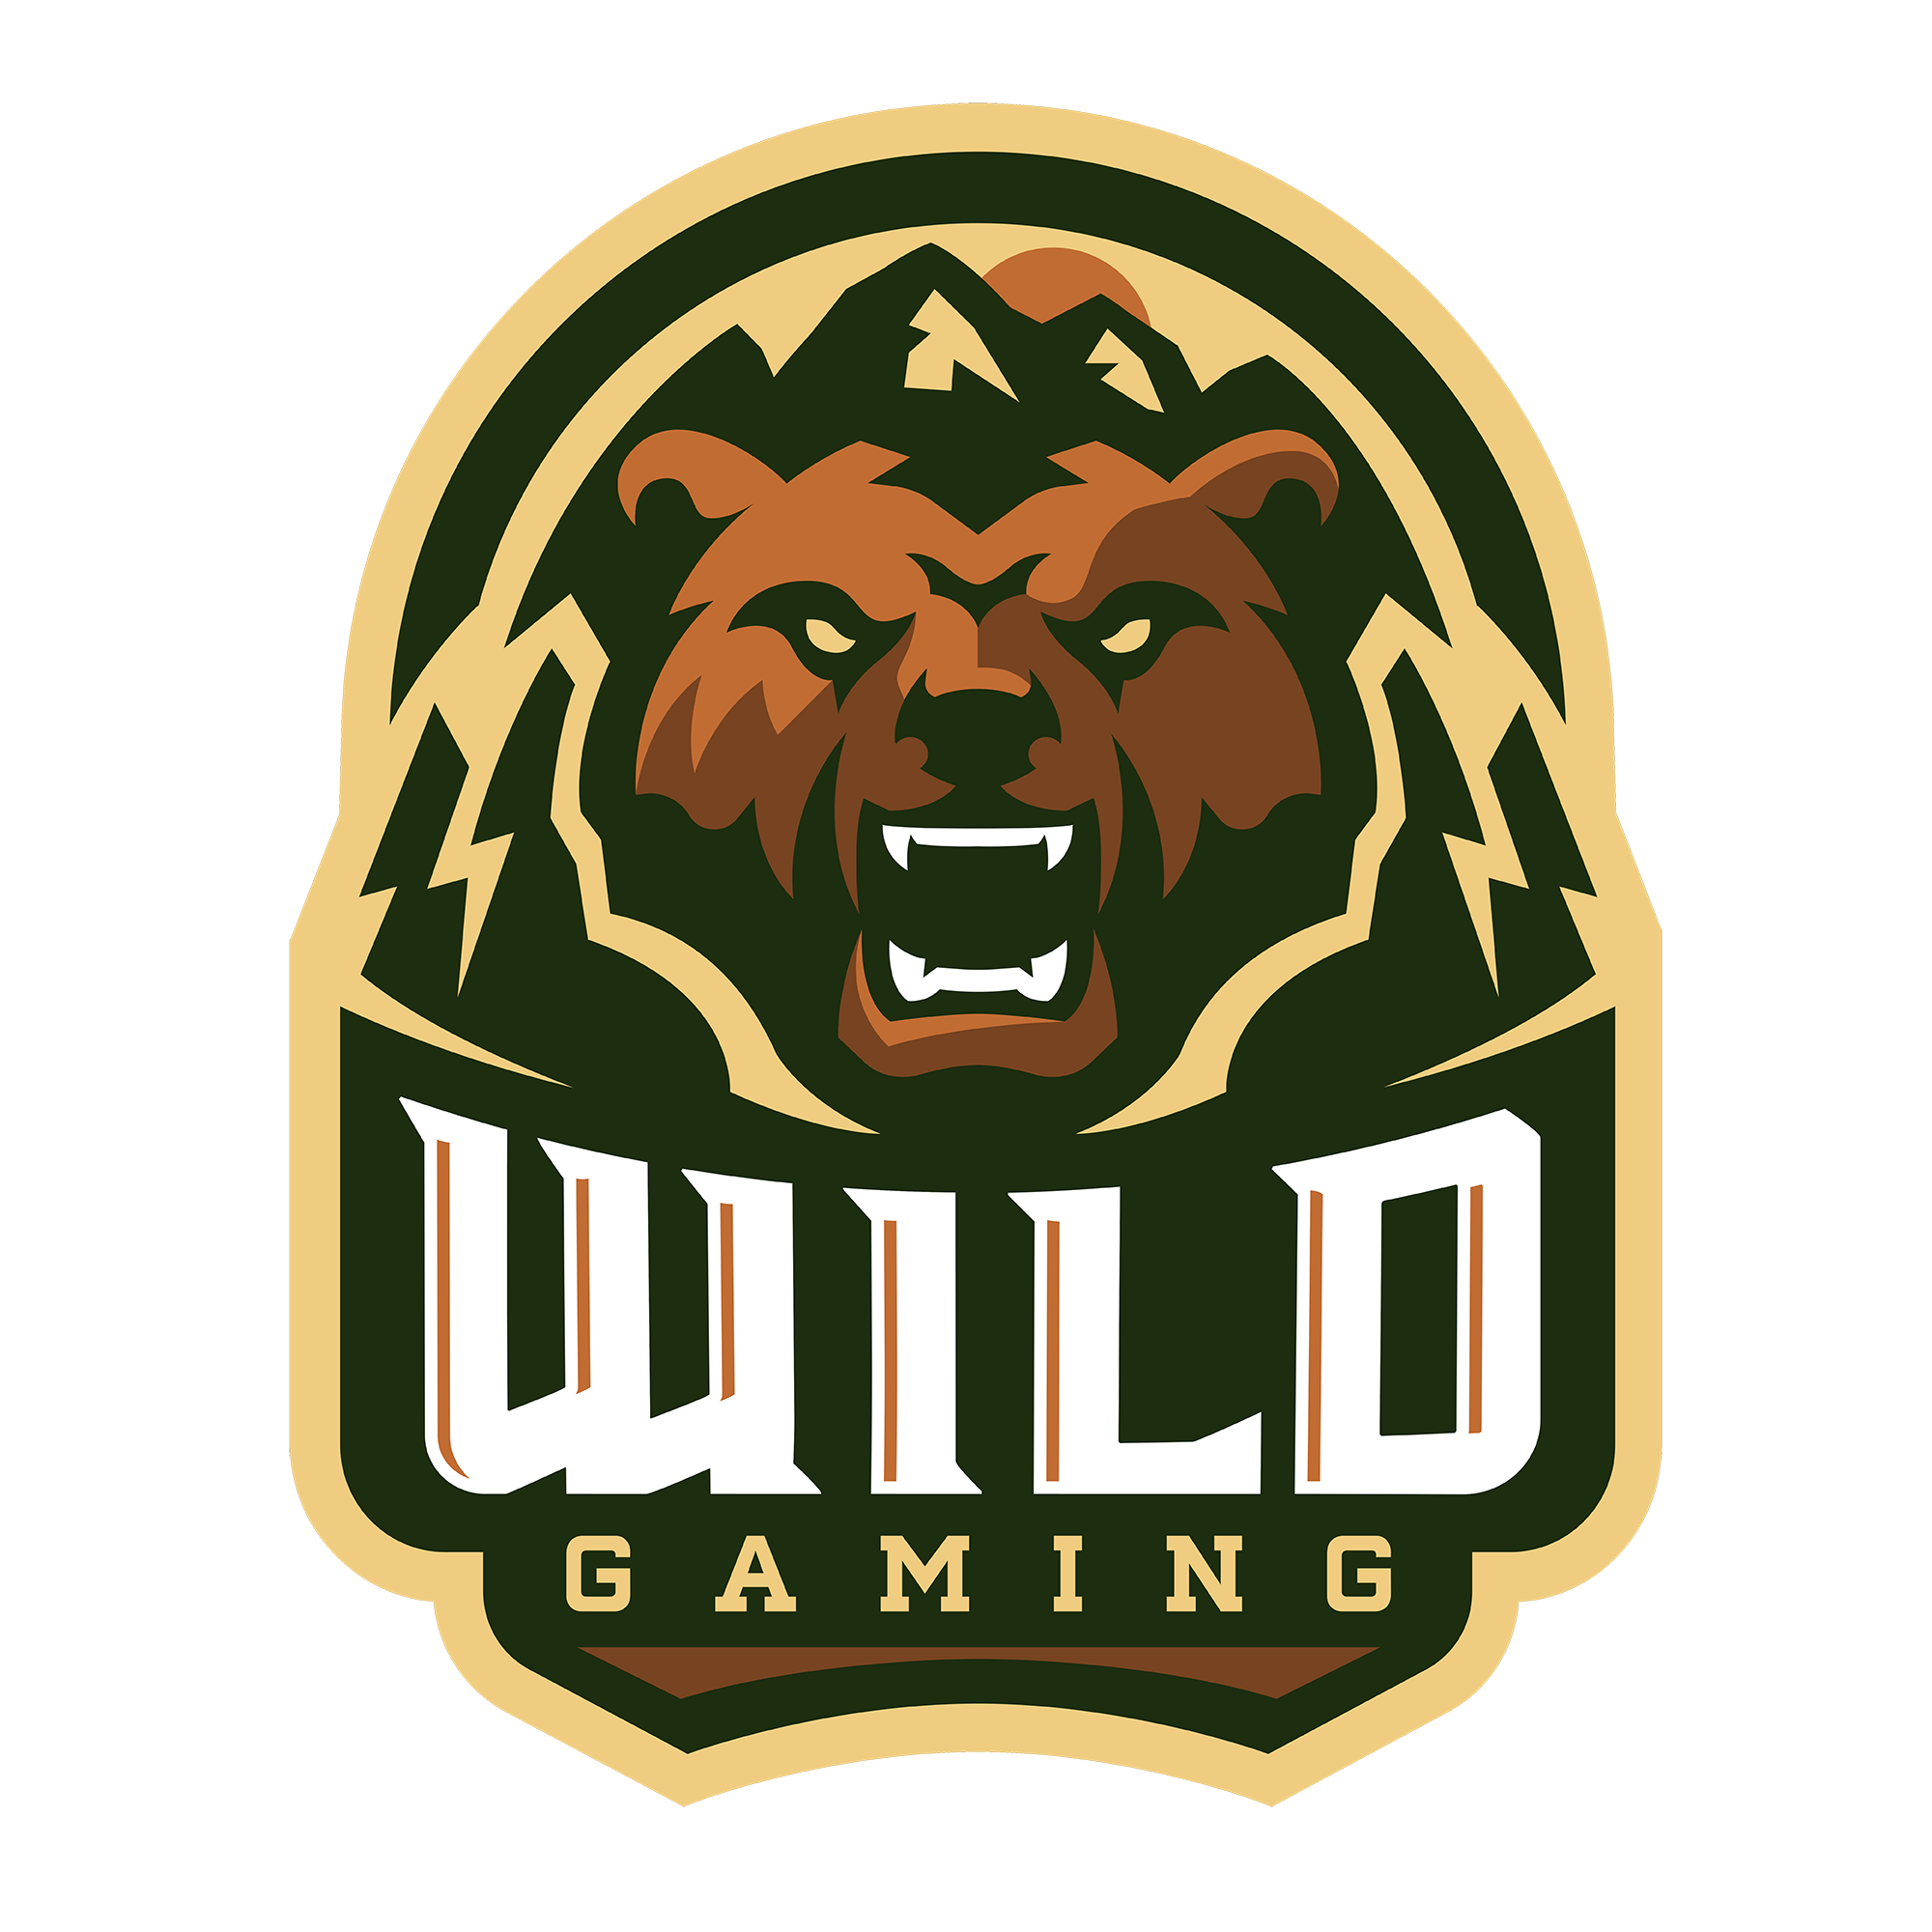 Wild Gaming's logo